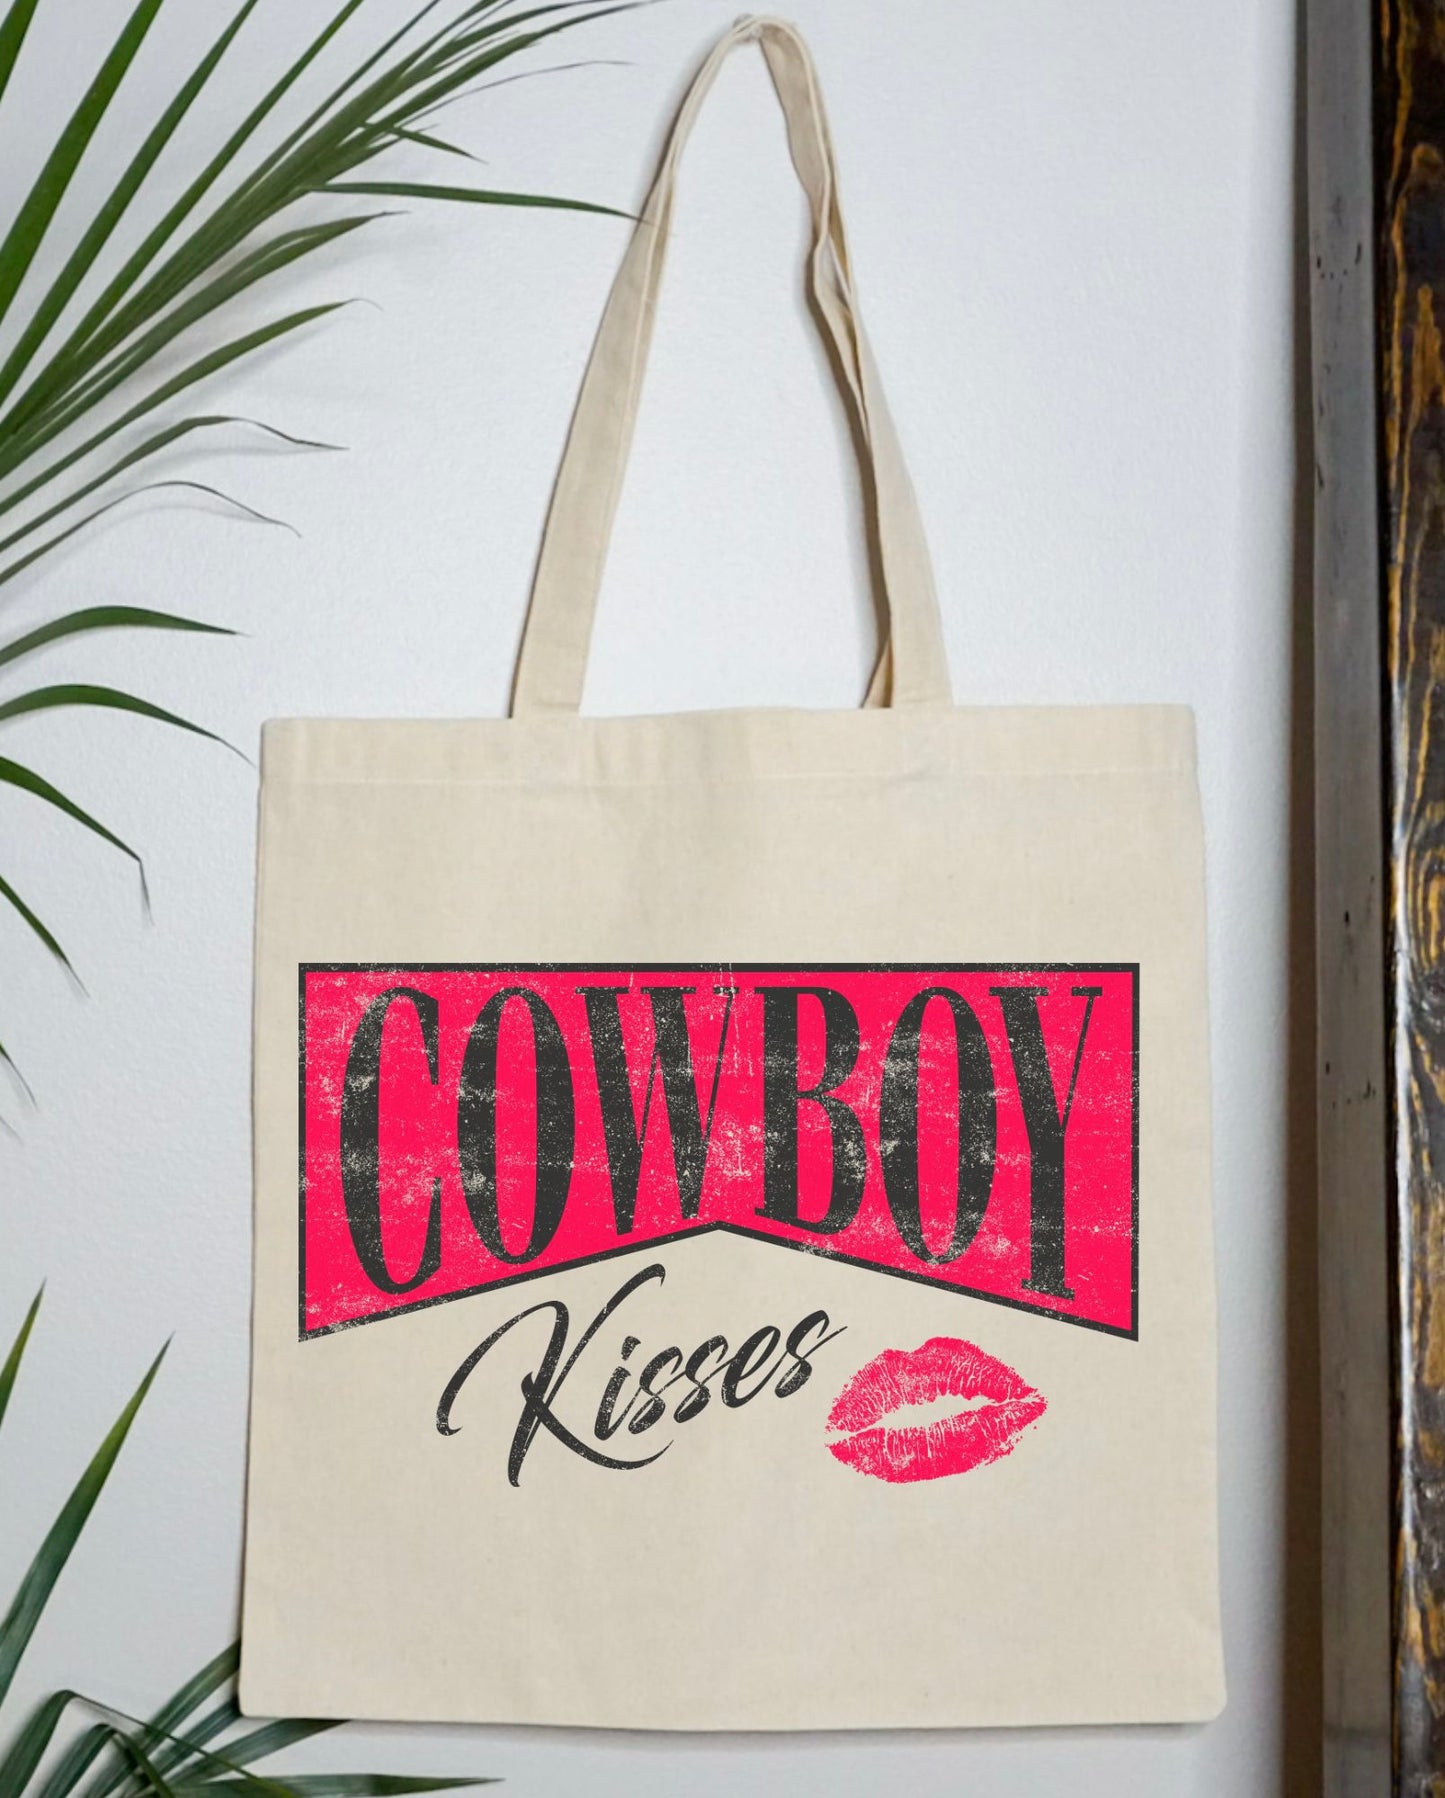 Cowboy Kisses Tote